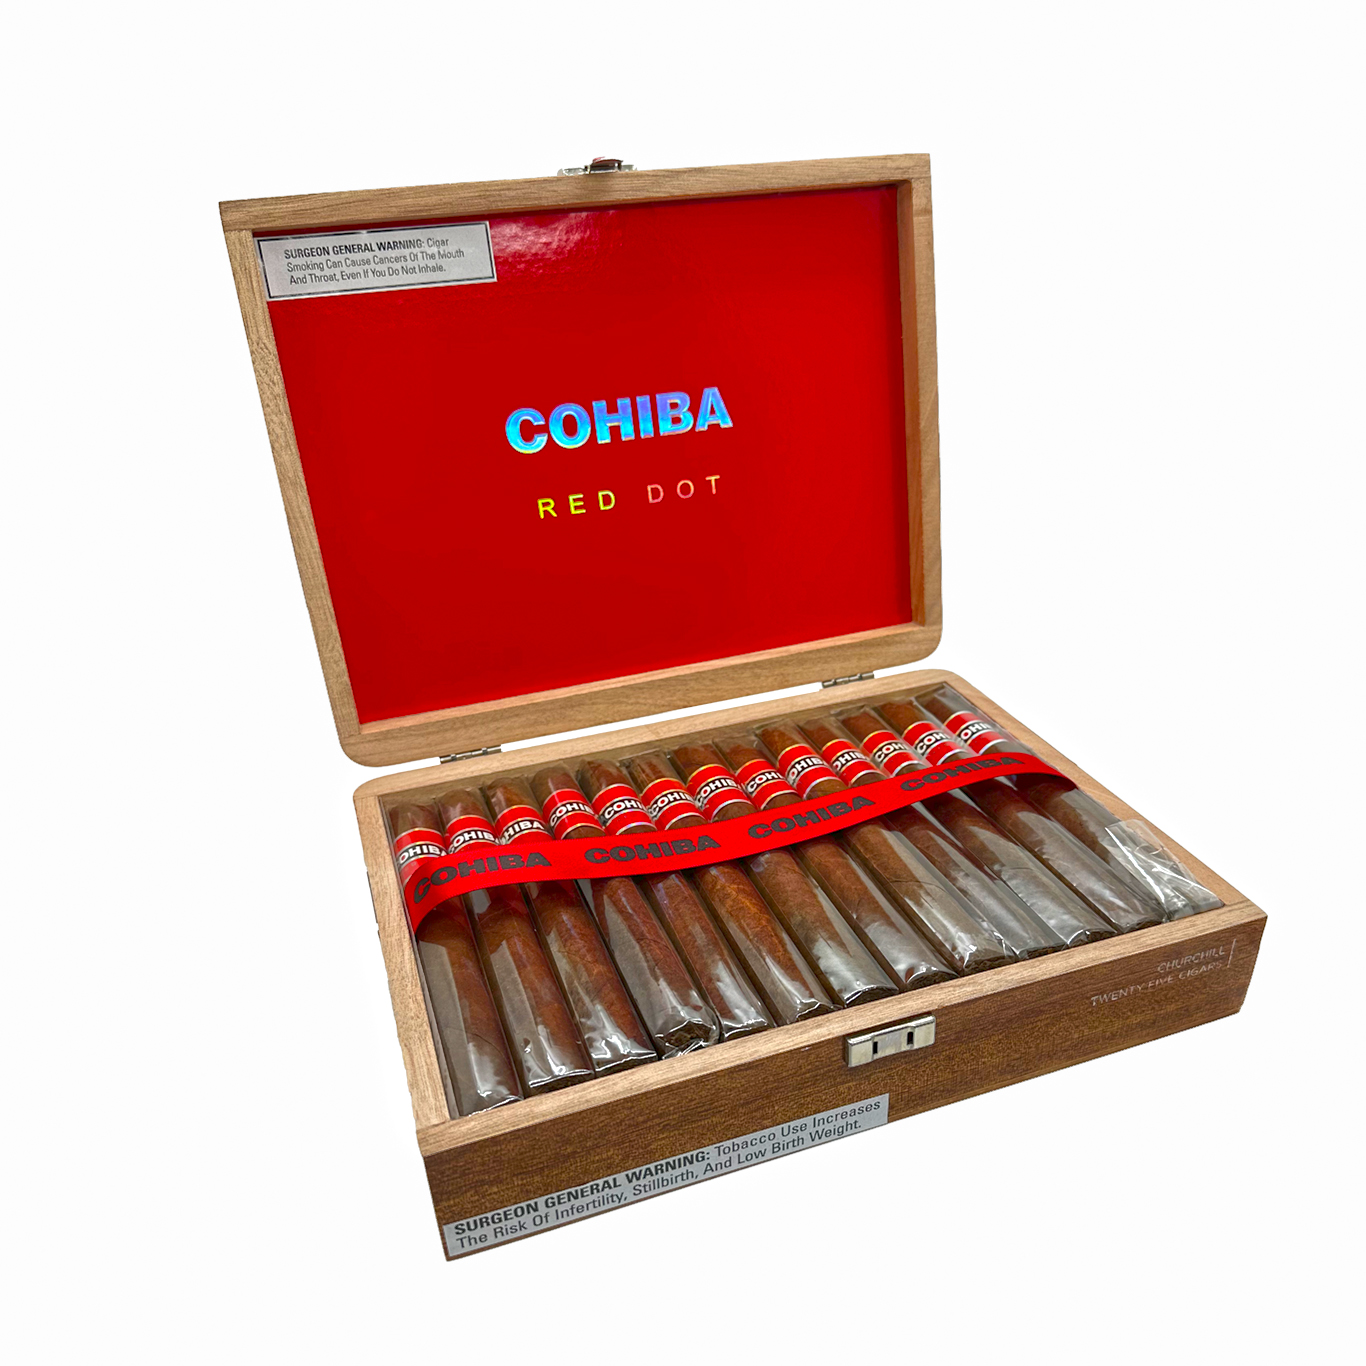 Ashton Churchill Empty Cigar Box 